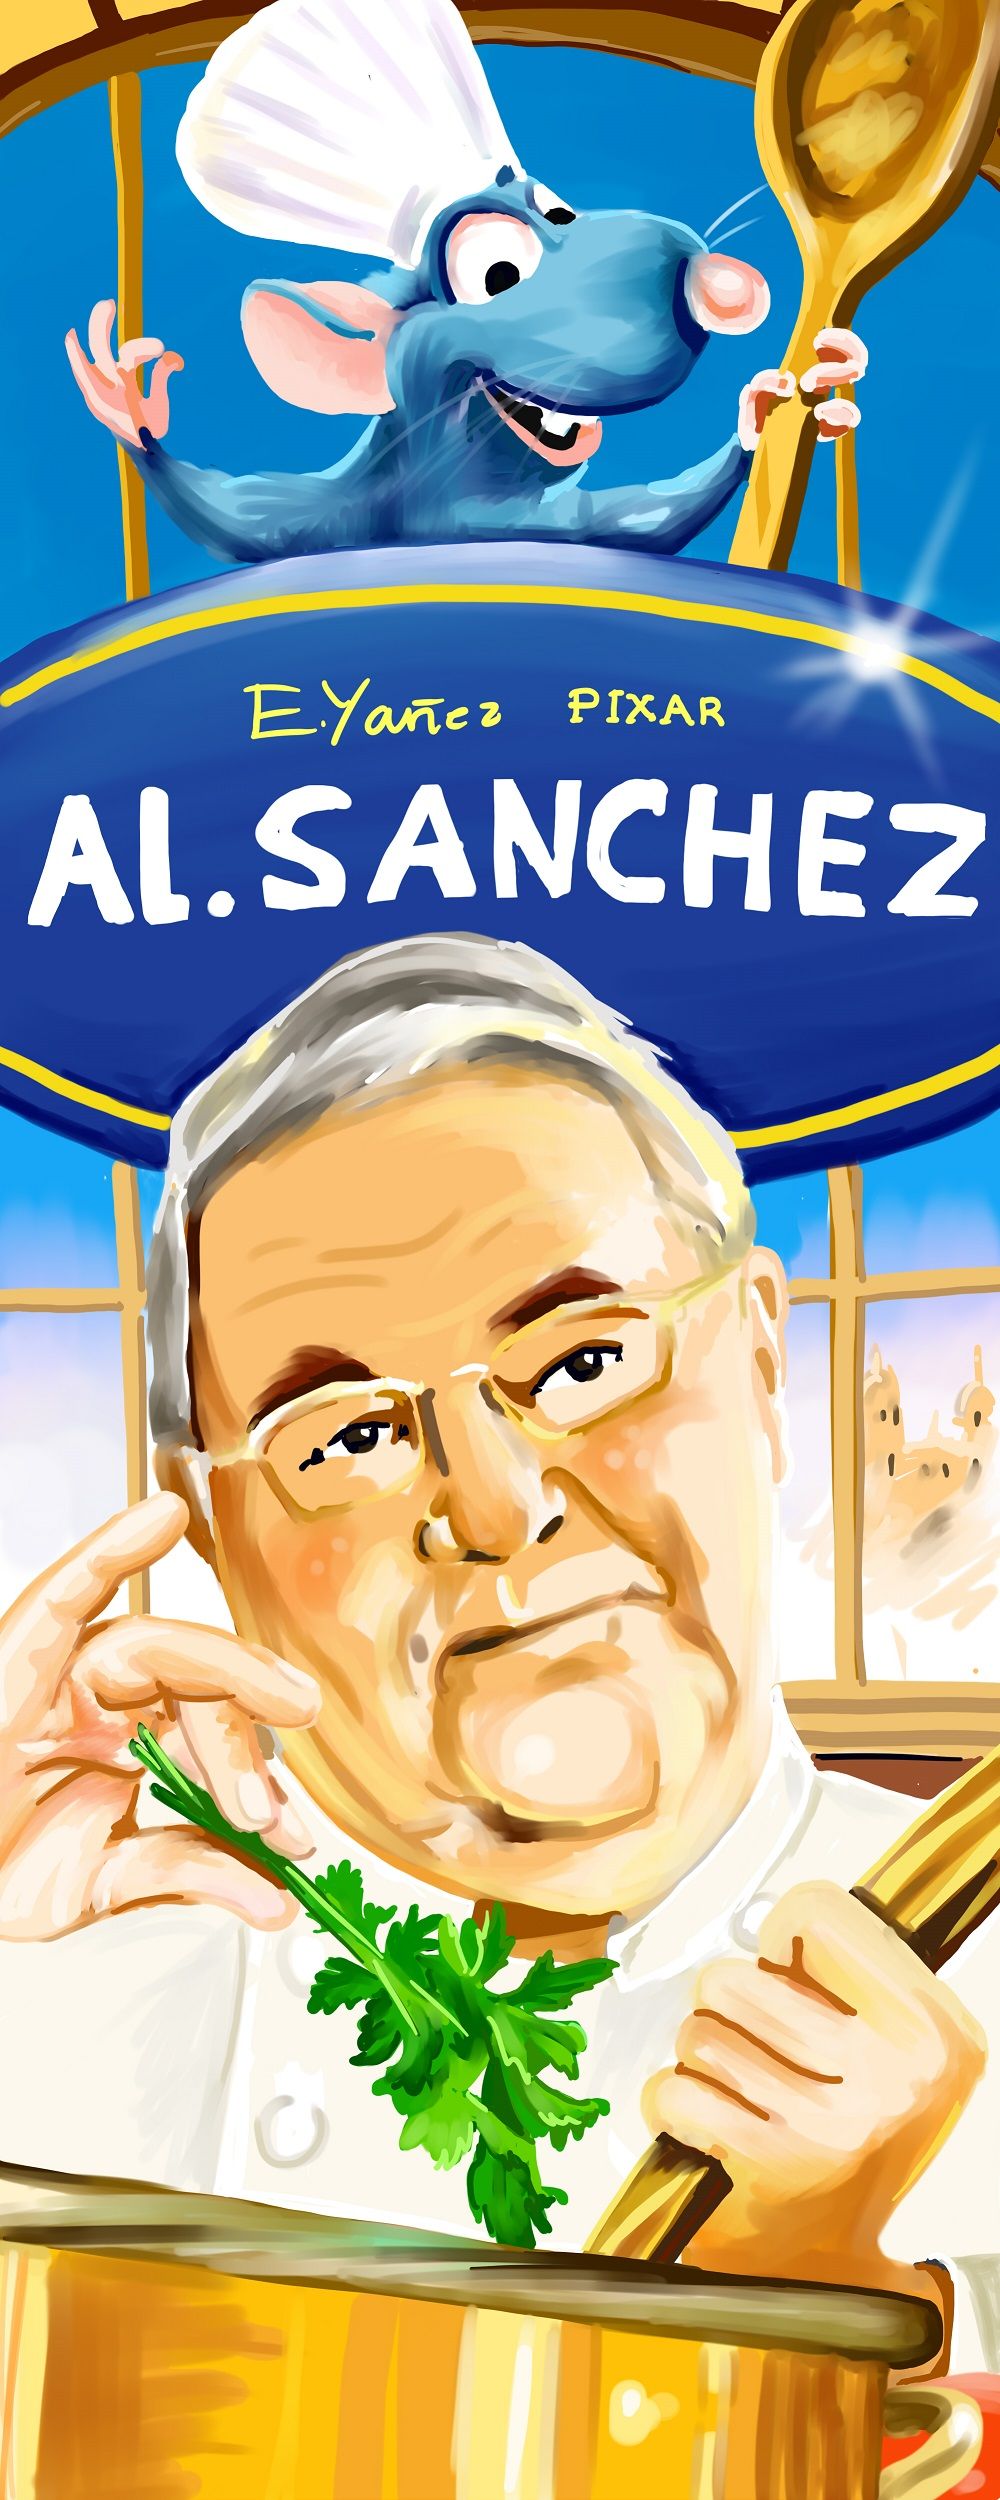 Alfonso Sánchez, lujo de pregonero